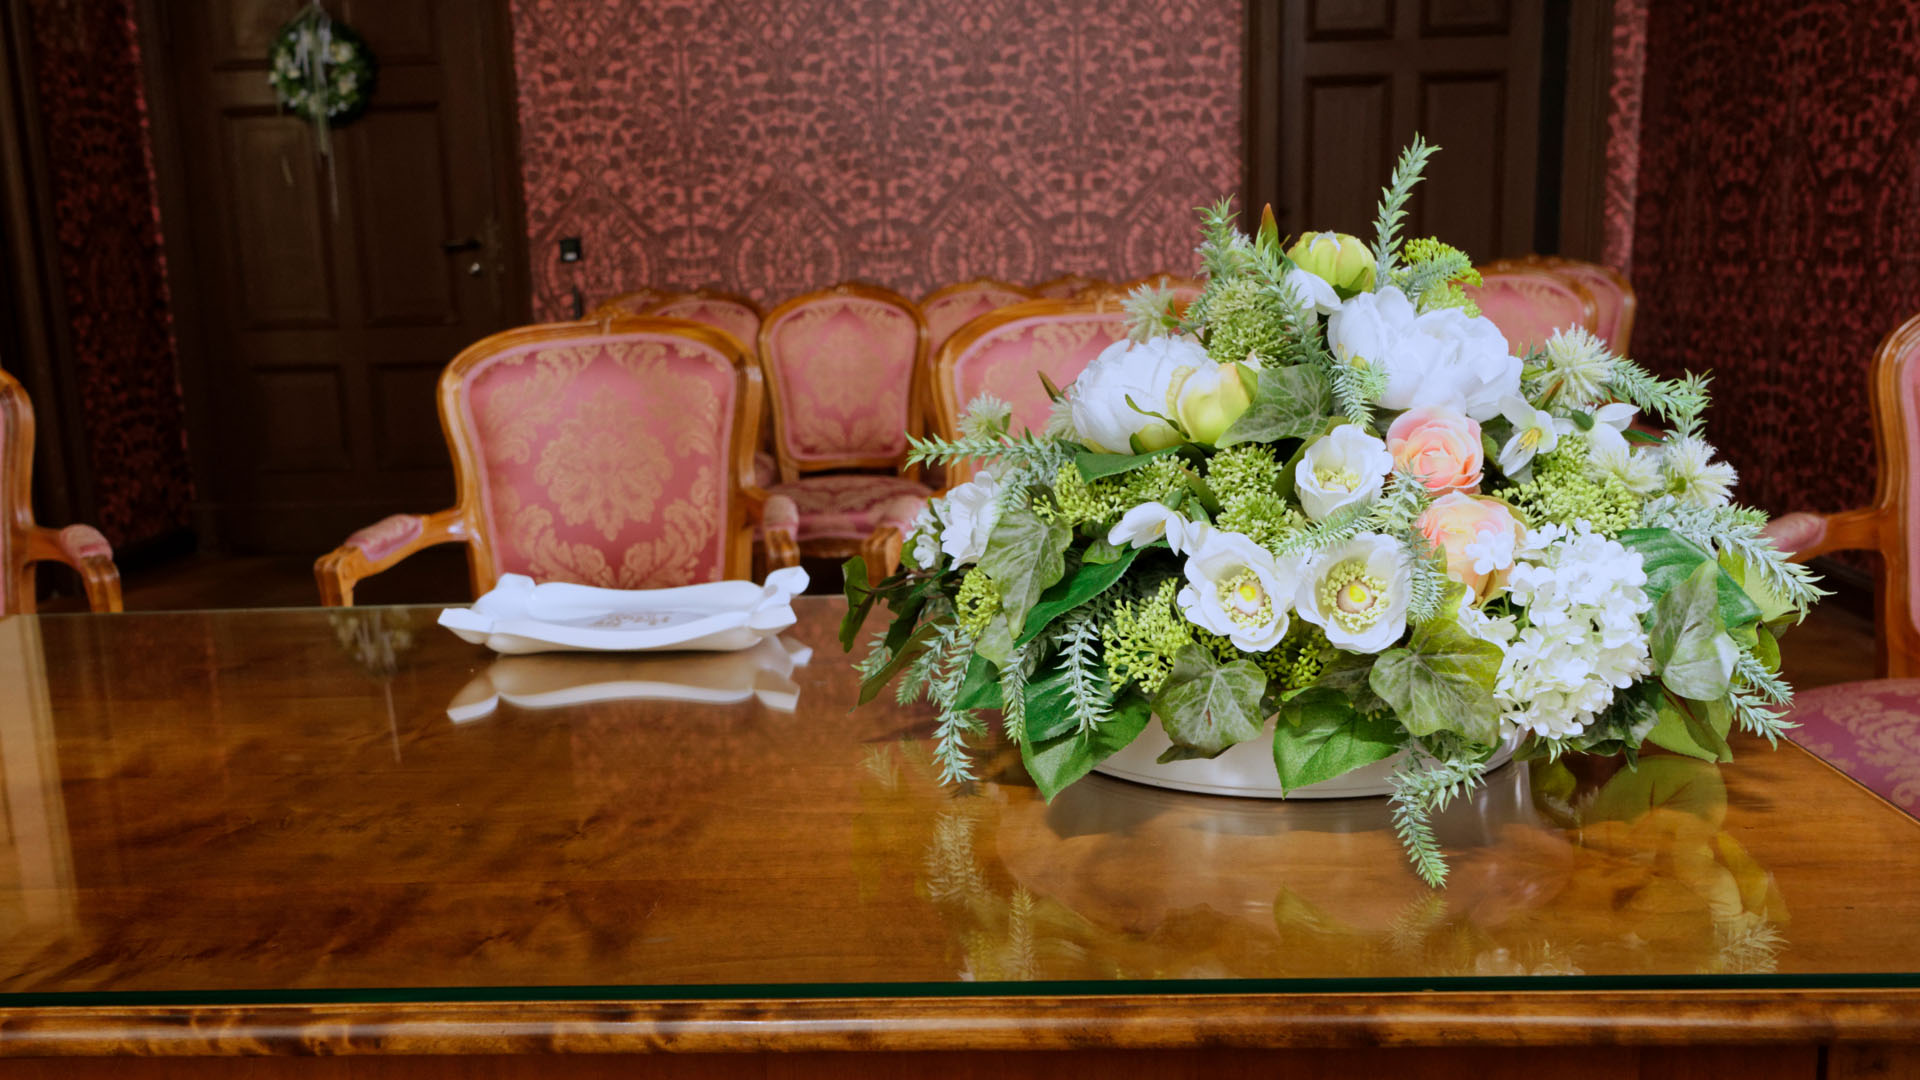 Blick in einen Raum mit Parkett, historischen mit Schnitzereien verzierten Schränken, rötliche Tapeten mit Prägung. Im Vordergrund steht ein Tisch mit Blumengesteck, dahinter sind Holzstühle mit rosa Stoffbezügen aufgestellt.